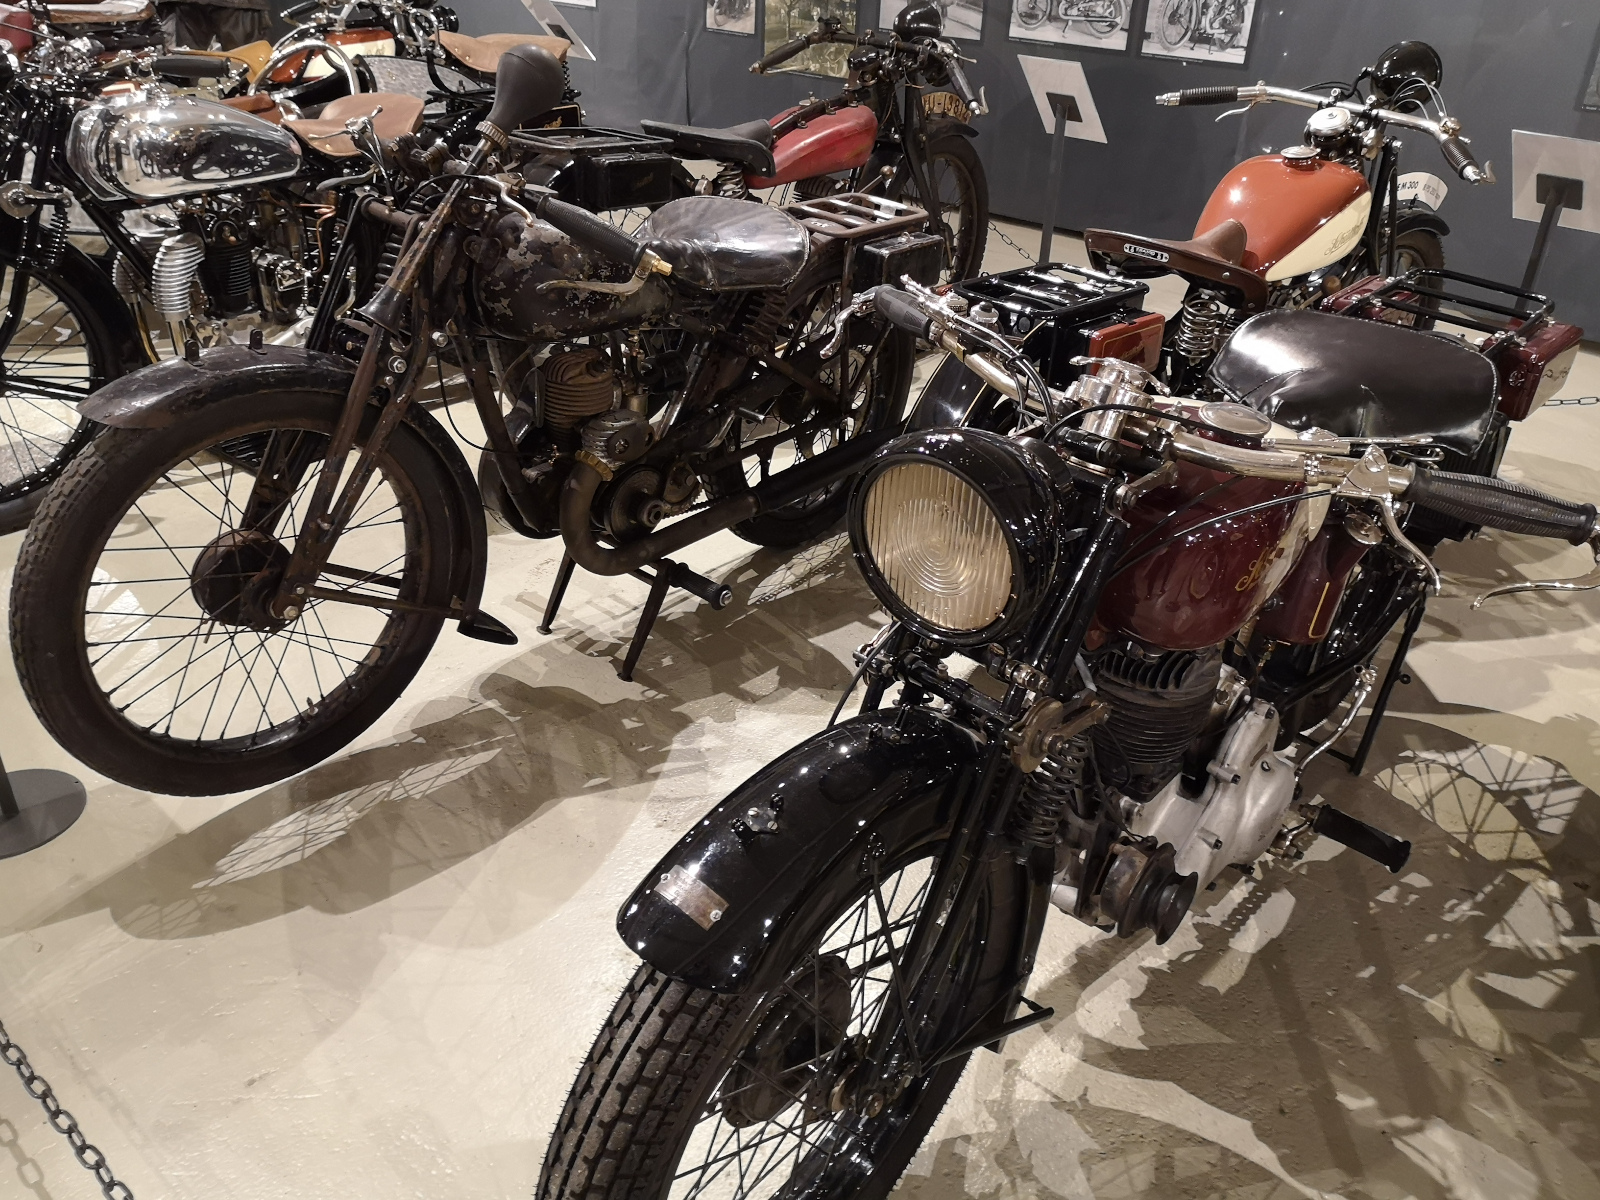 Motorräder in der Sonderausstellung "100 Jahre Schüttoff"